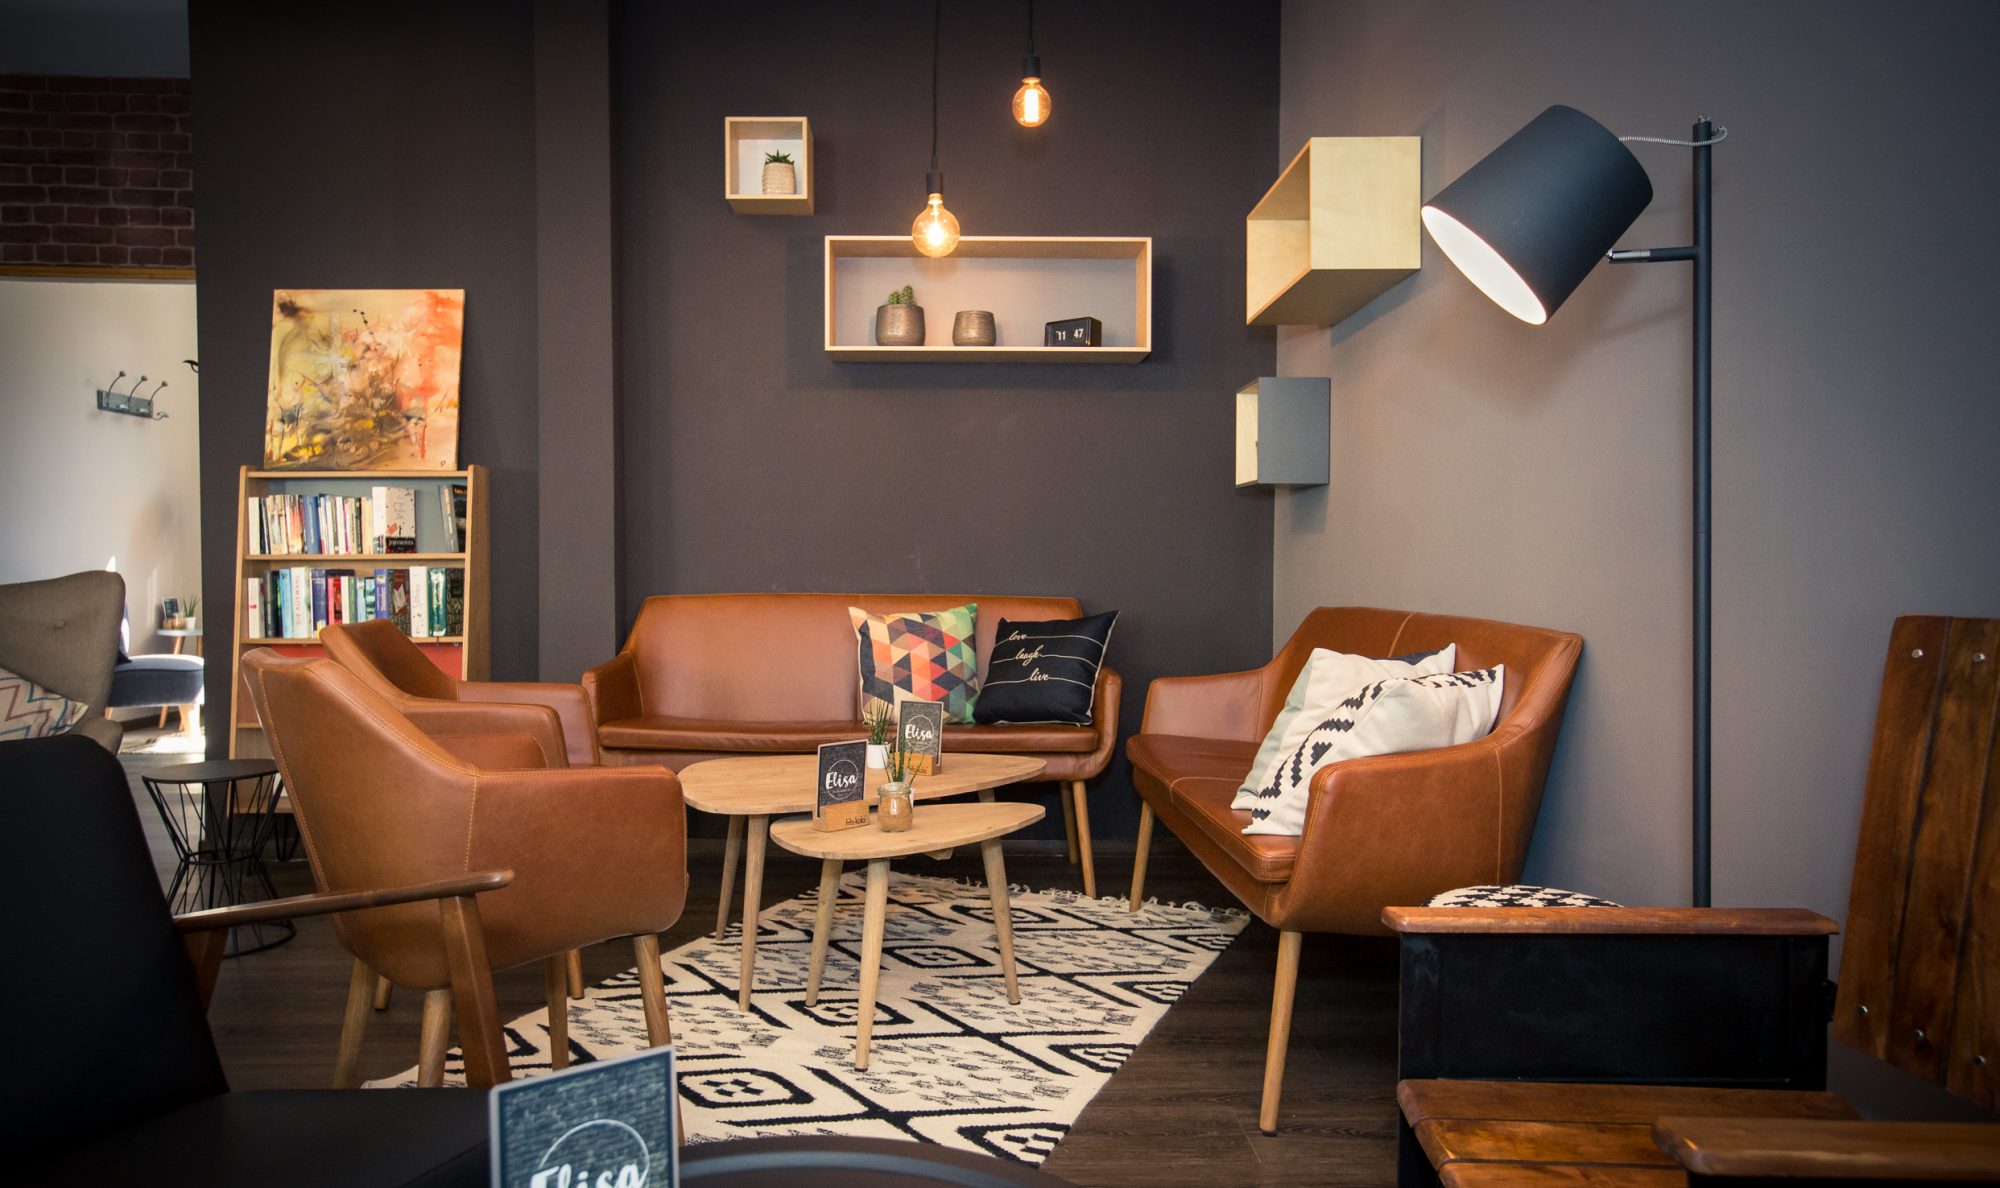 Konditorei und Café Elisa – Dein neues Wohnzimmer.